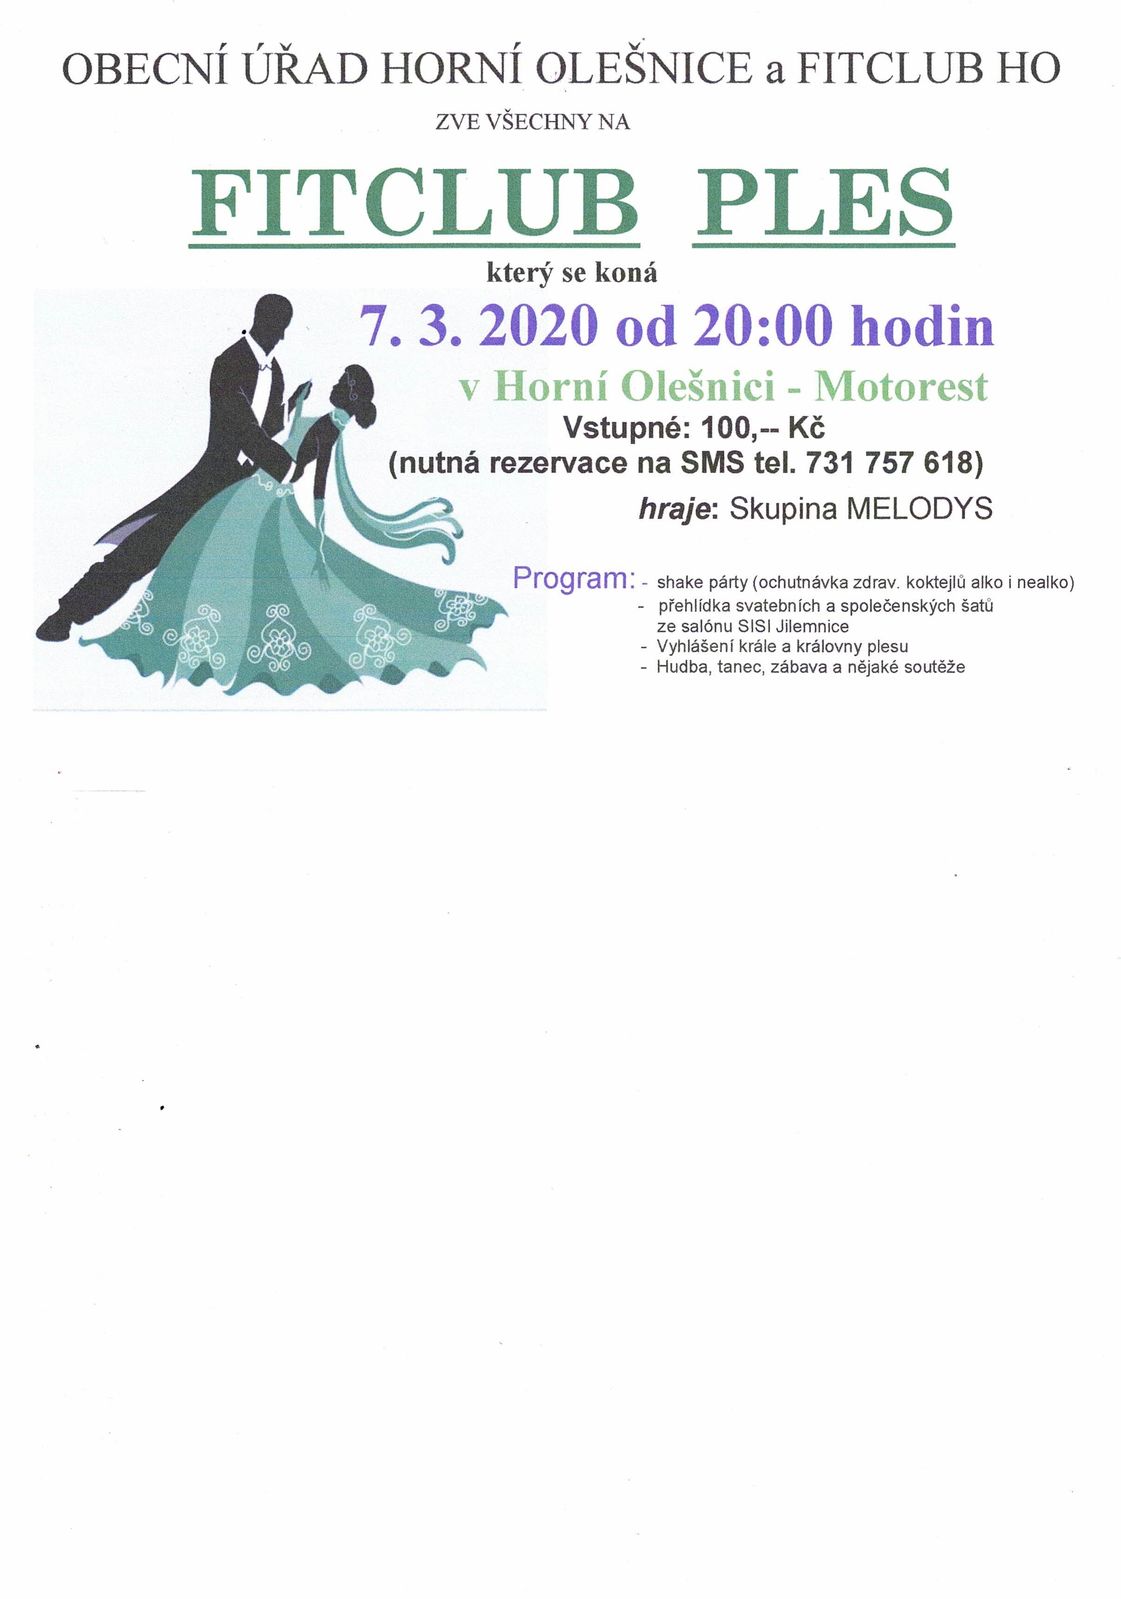 Pozvánka na FITCLUB PLES v Horní Olešnici dne 07.03.2020